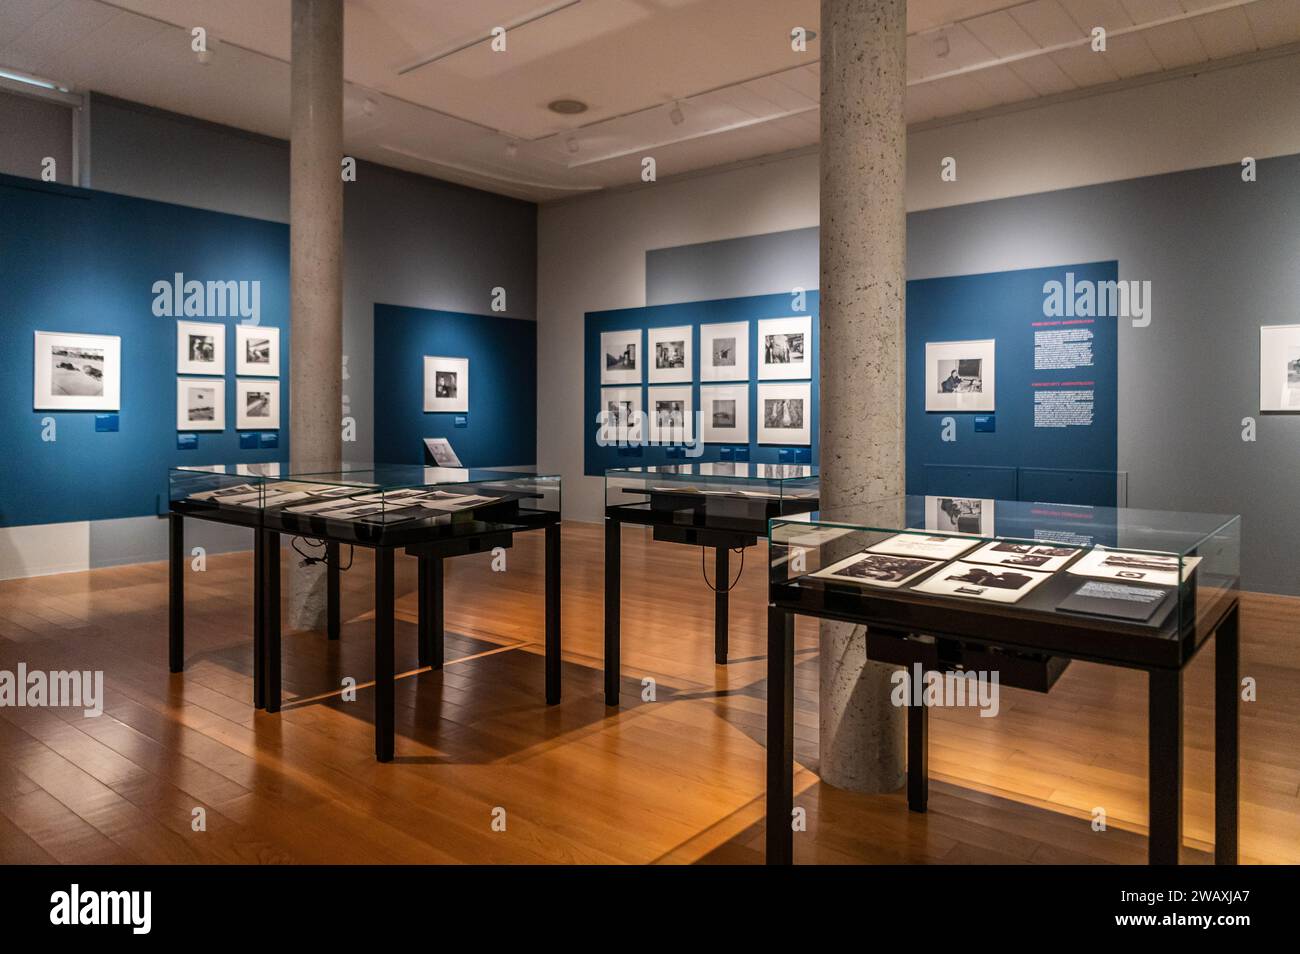 Exposition photographique de la célèbre photographe américaine Dorothea Lange au Musée civique de Bassano del Grappa, région de Vénétie, Italie du Nord, D Banque D'Images